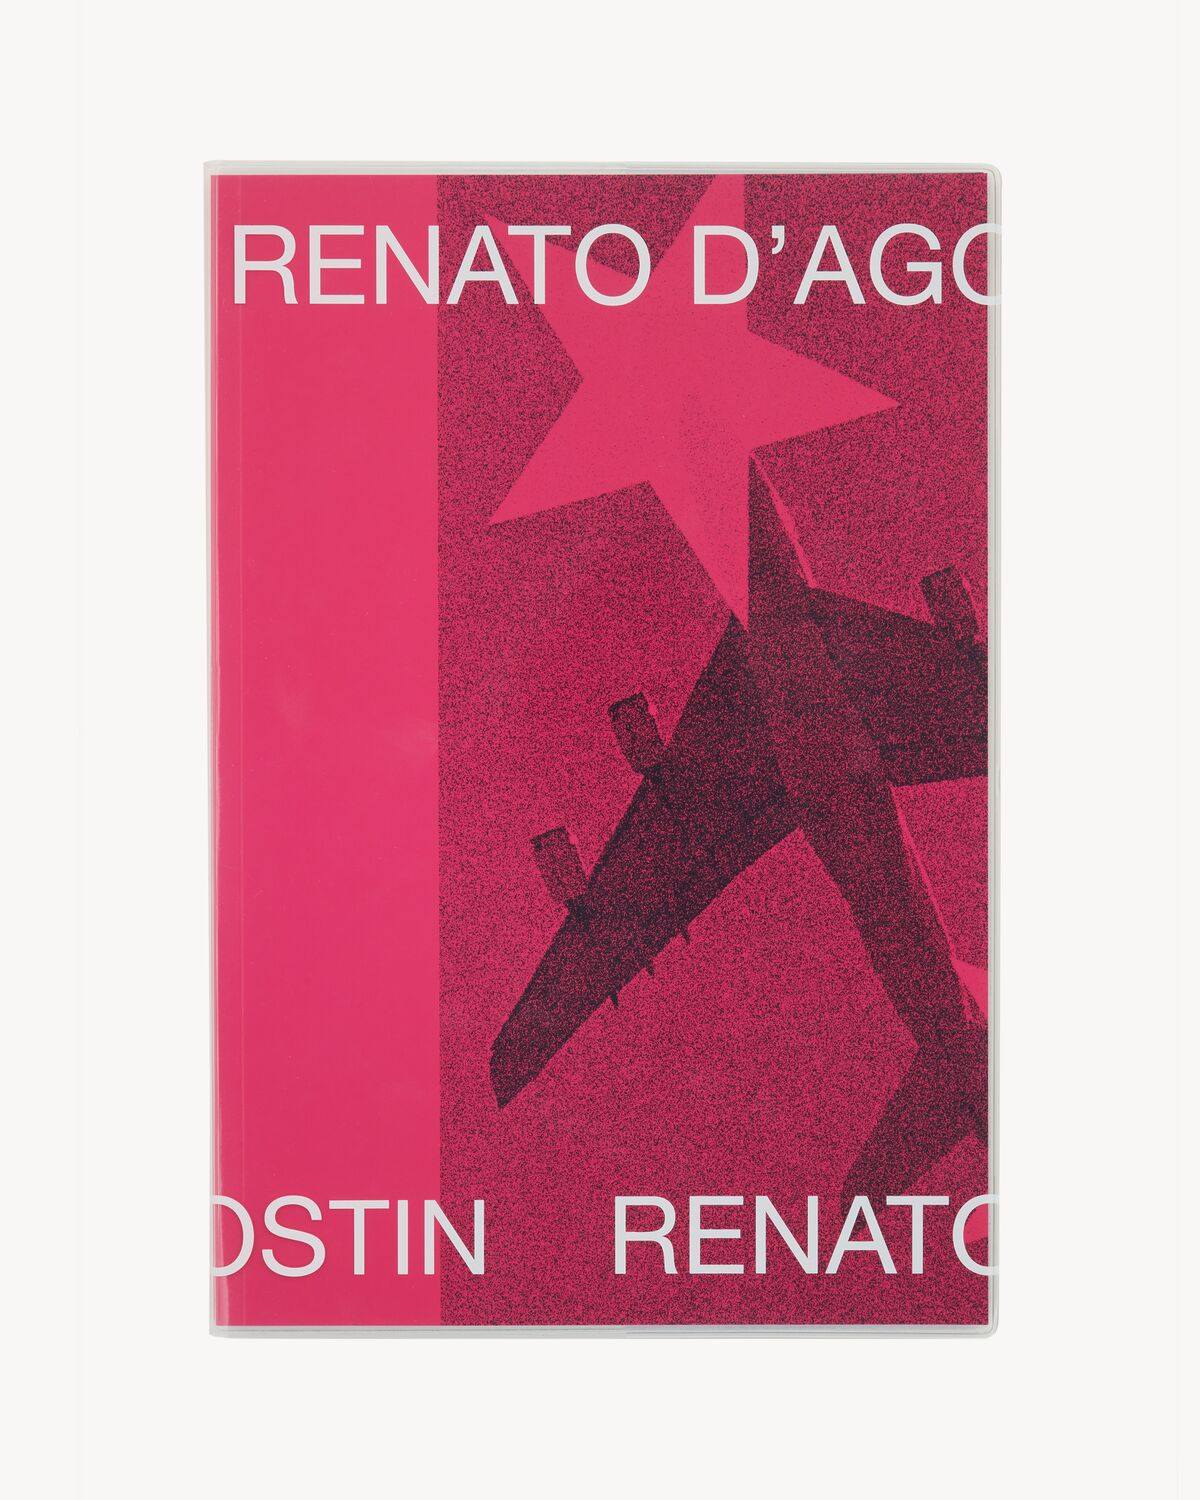 SL EDITIONS: RENATO D’AGOSTIN